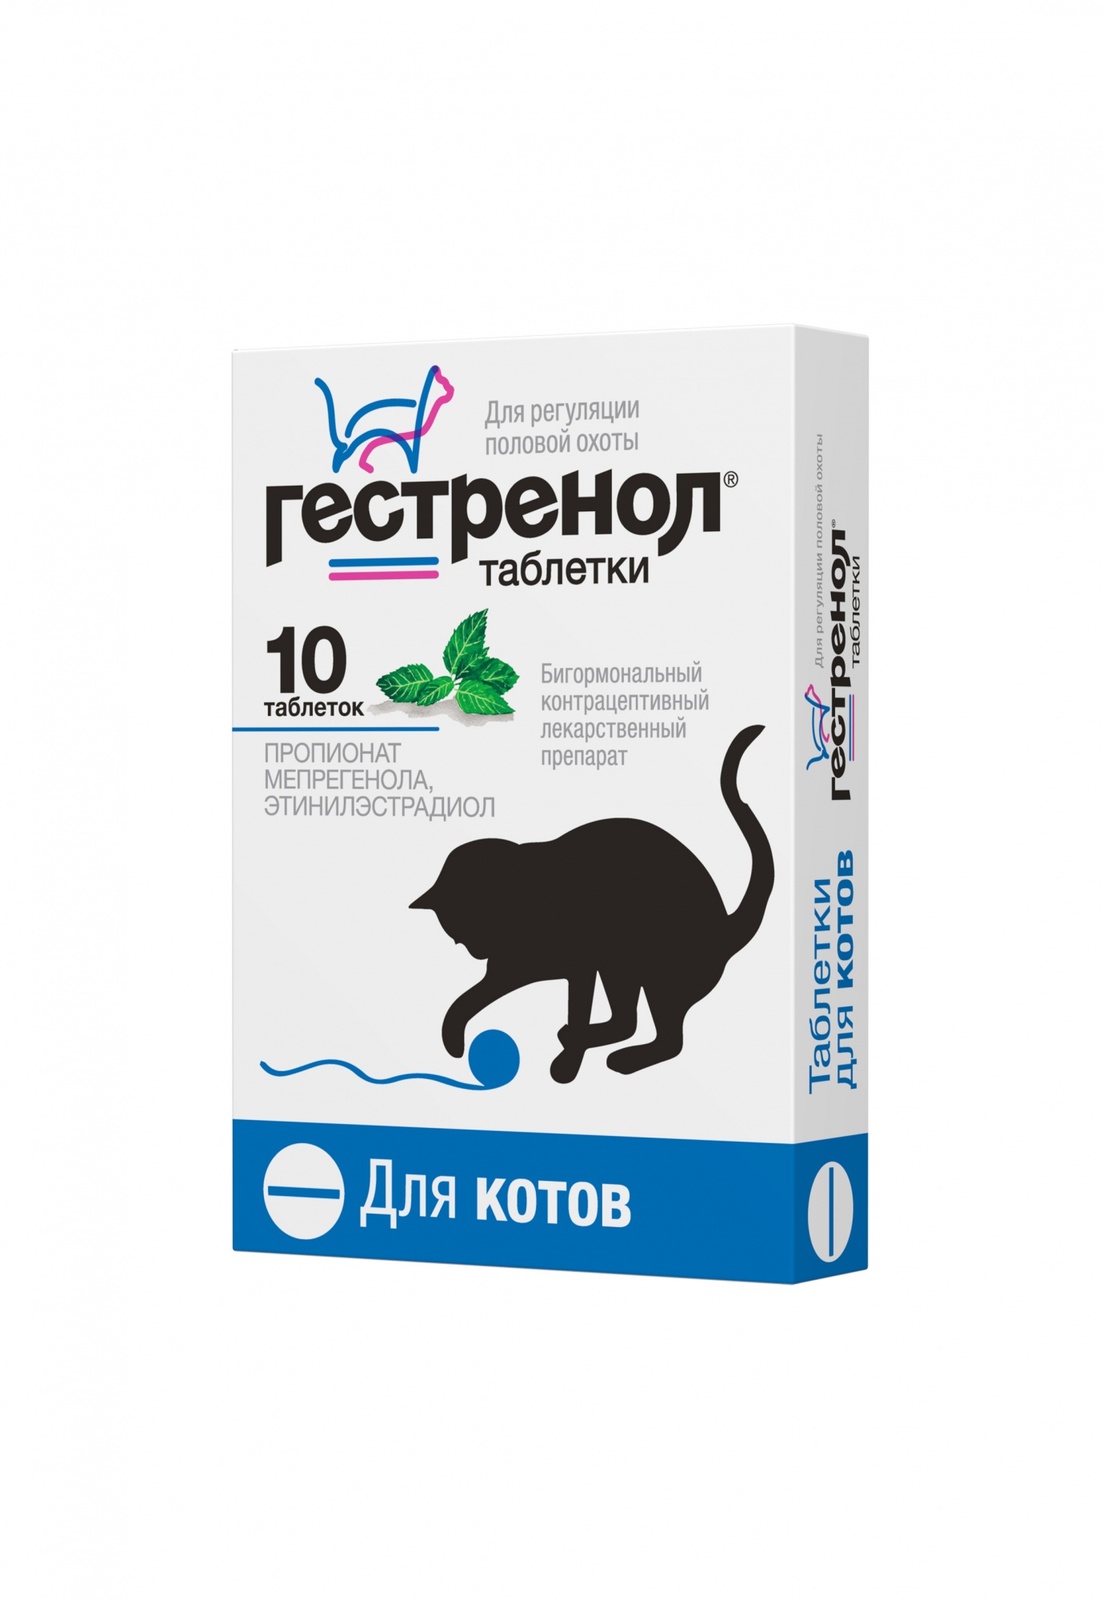 Астрафарм Астрафарм гестренол таблетки для котов для регуляции половой охоты, 10 таб. (7 г)